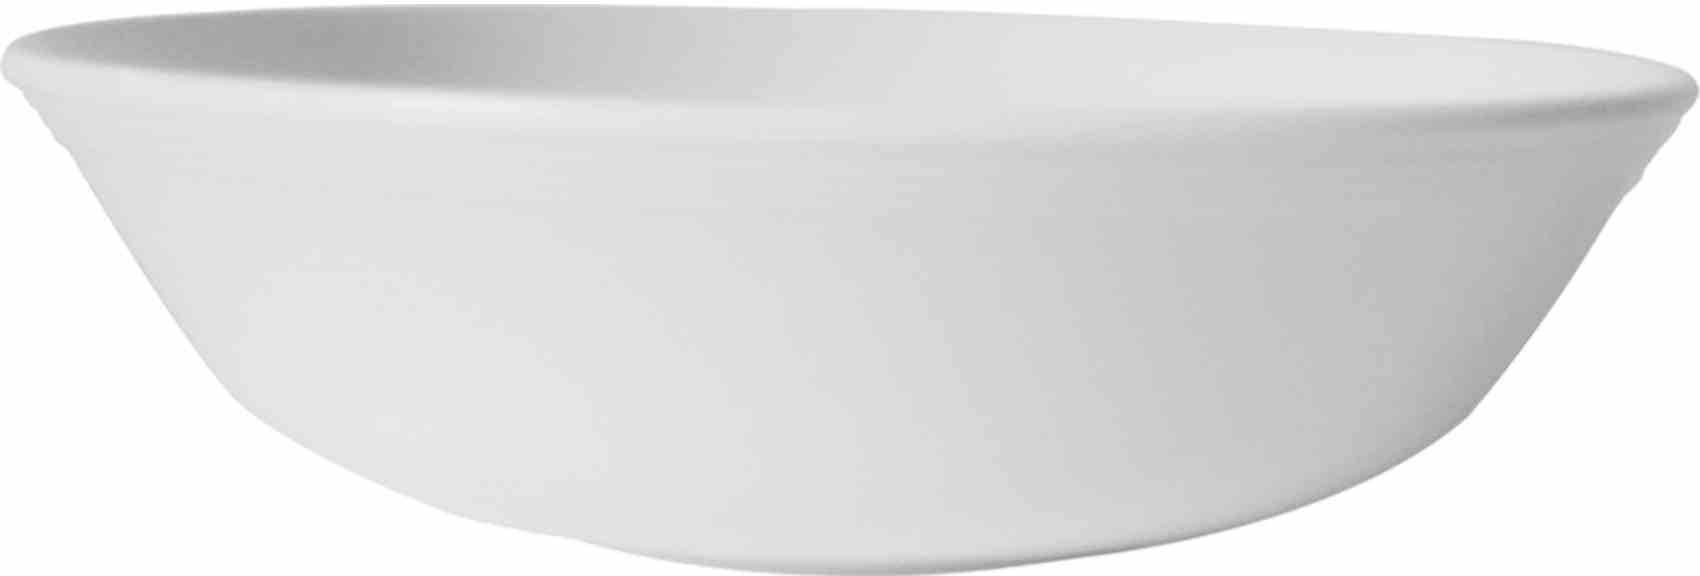 Servewell Melamine Serving Bowl White 16x13cm